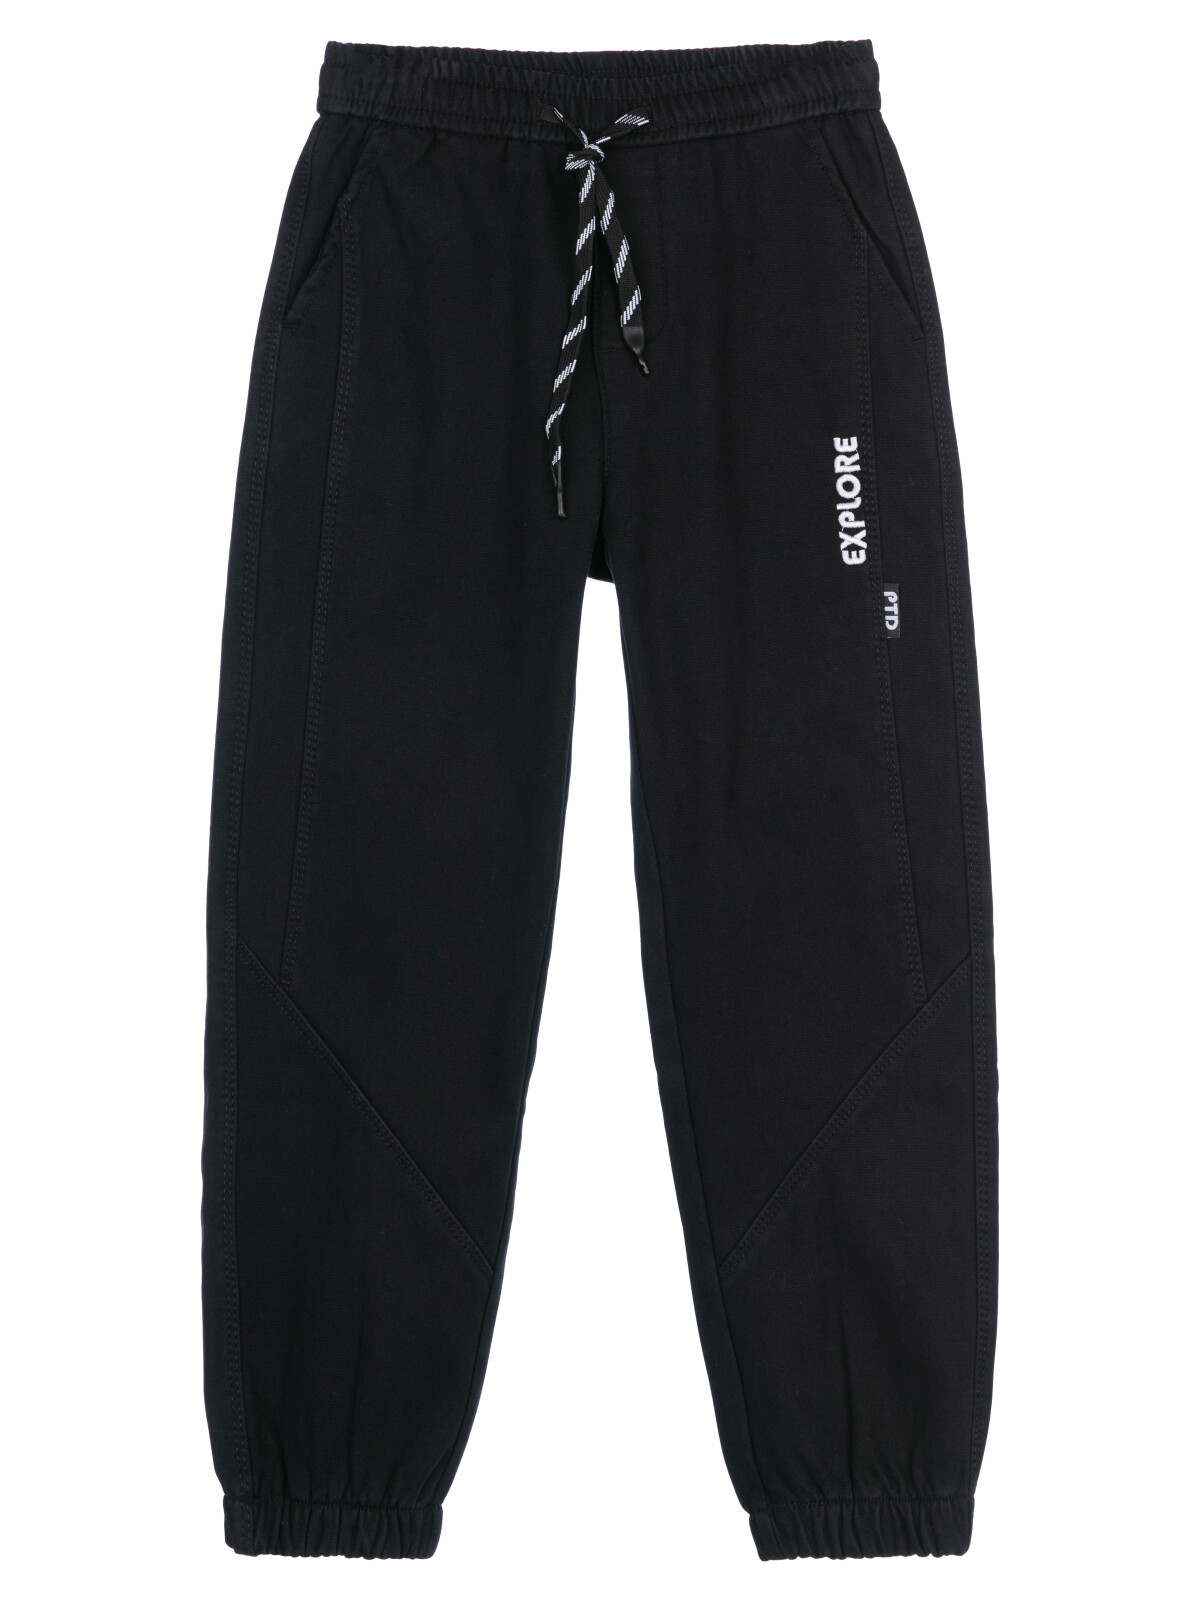 Брюки текстильные джинсовые утепленные флисом для мальчиков PlayToday, черный, 146